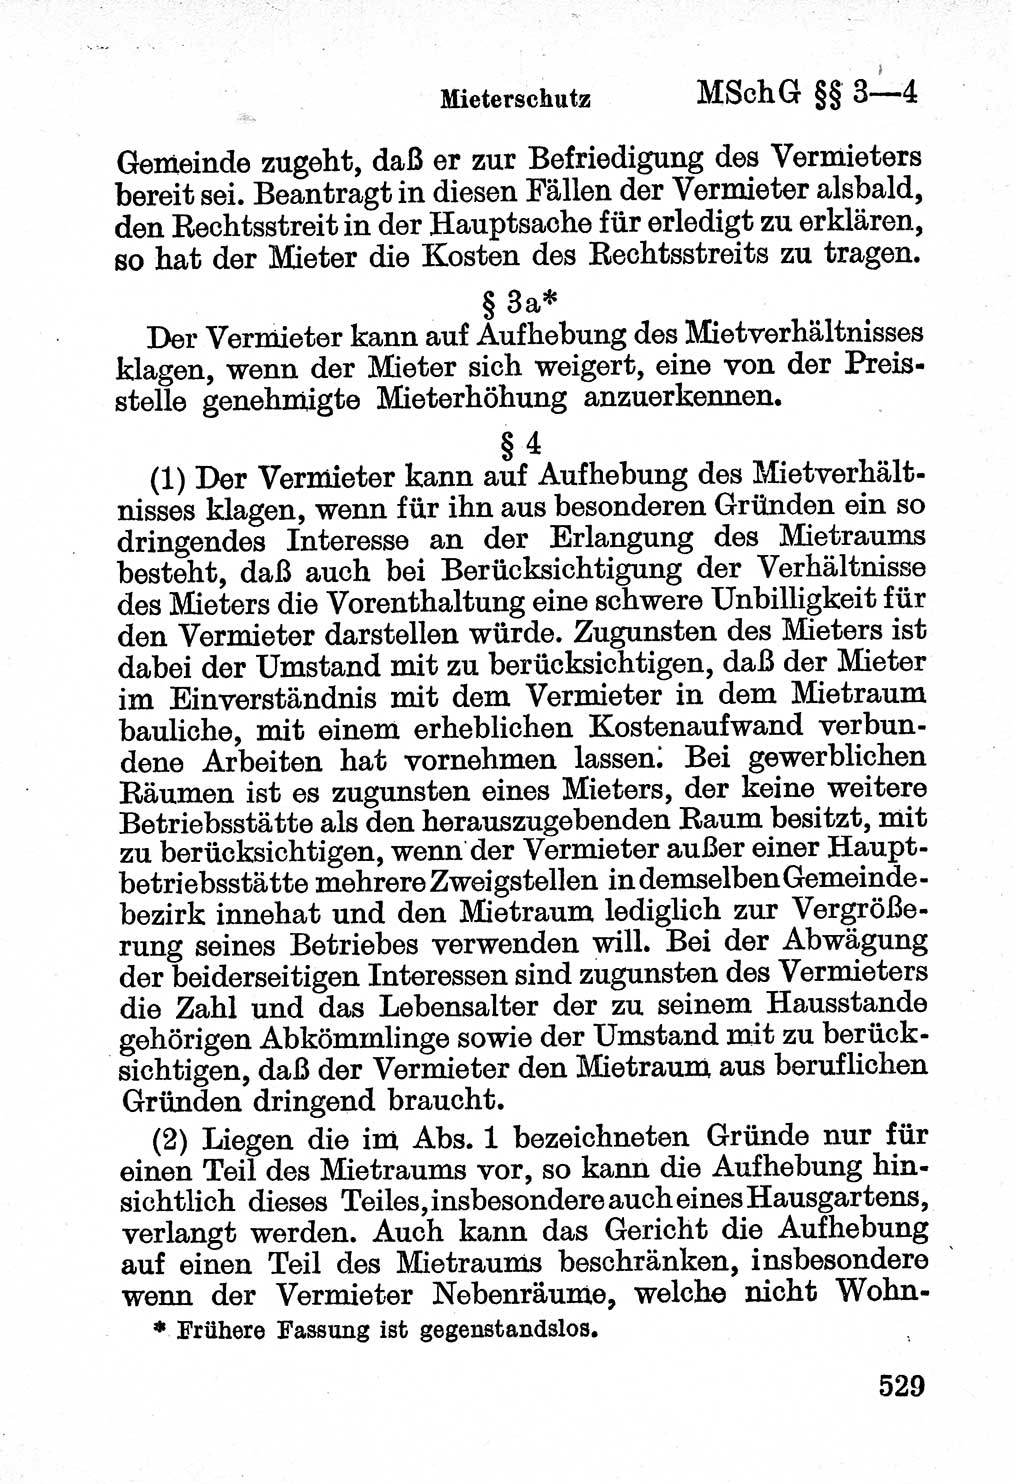 Bürgerliches Gesetzbuch (BGB) nebst wichtigen Nebengesetzen [Deutsche Demokratische Republik (DDR)] 1956, Seite 529 (BGB Nebenges. DDR 1956, S. 529)